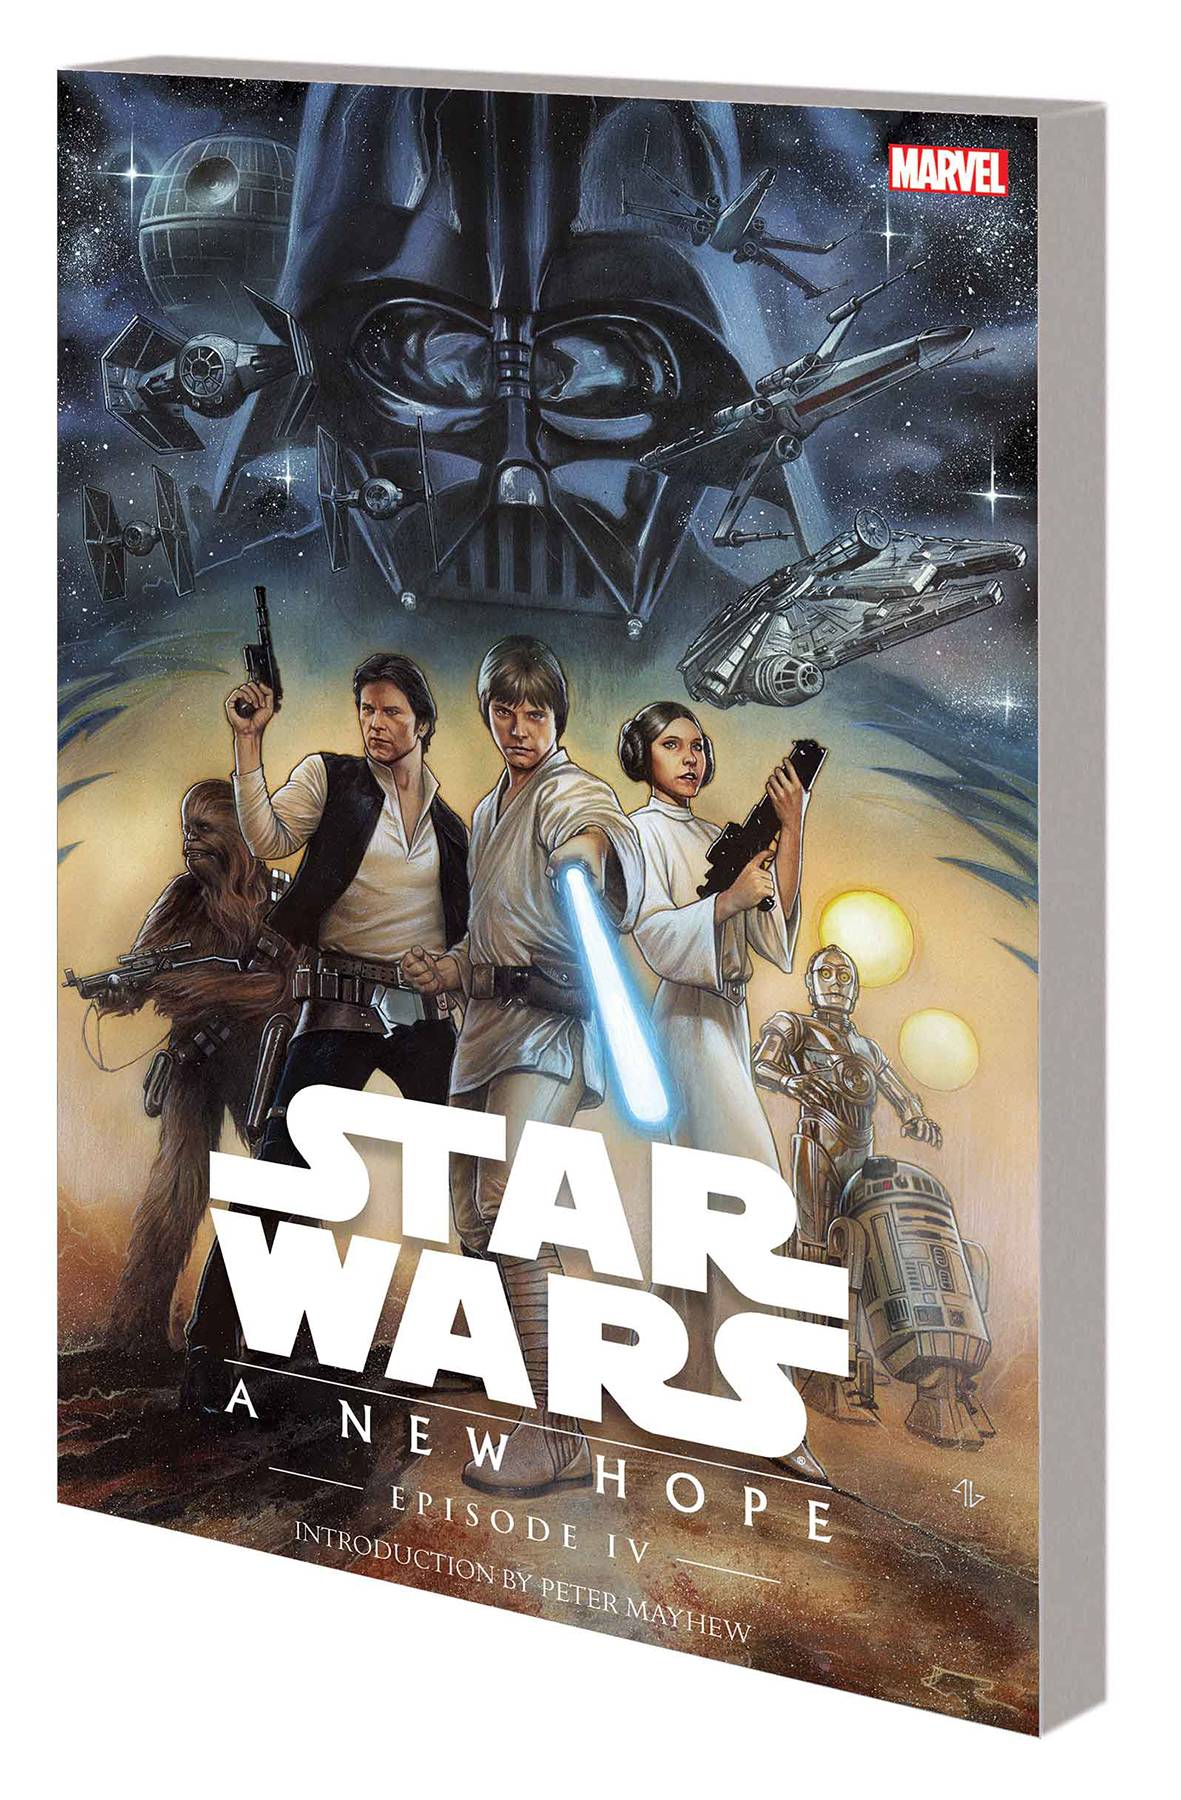 Star Wars Episode IV Graphic Novel New Hope